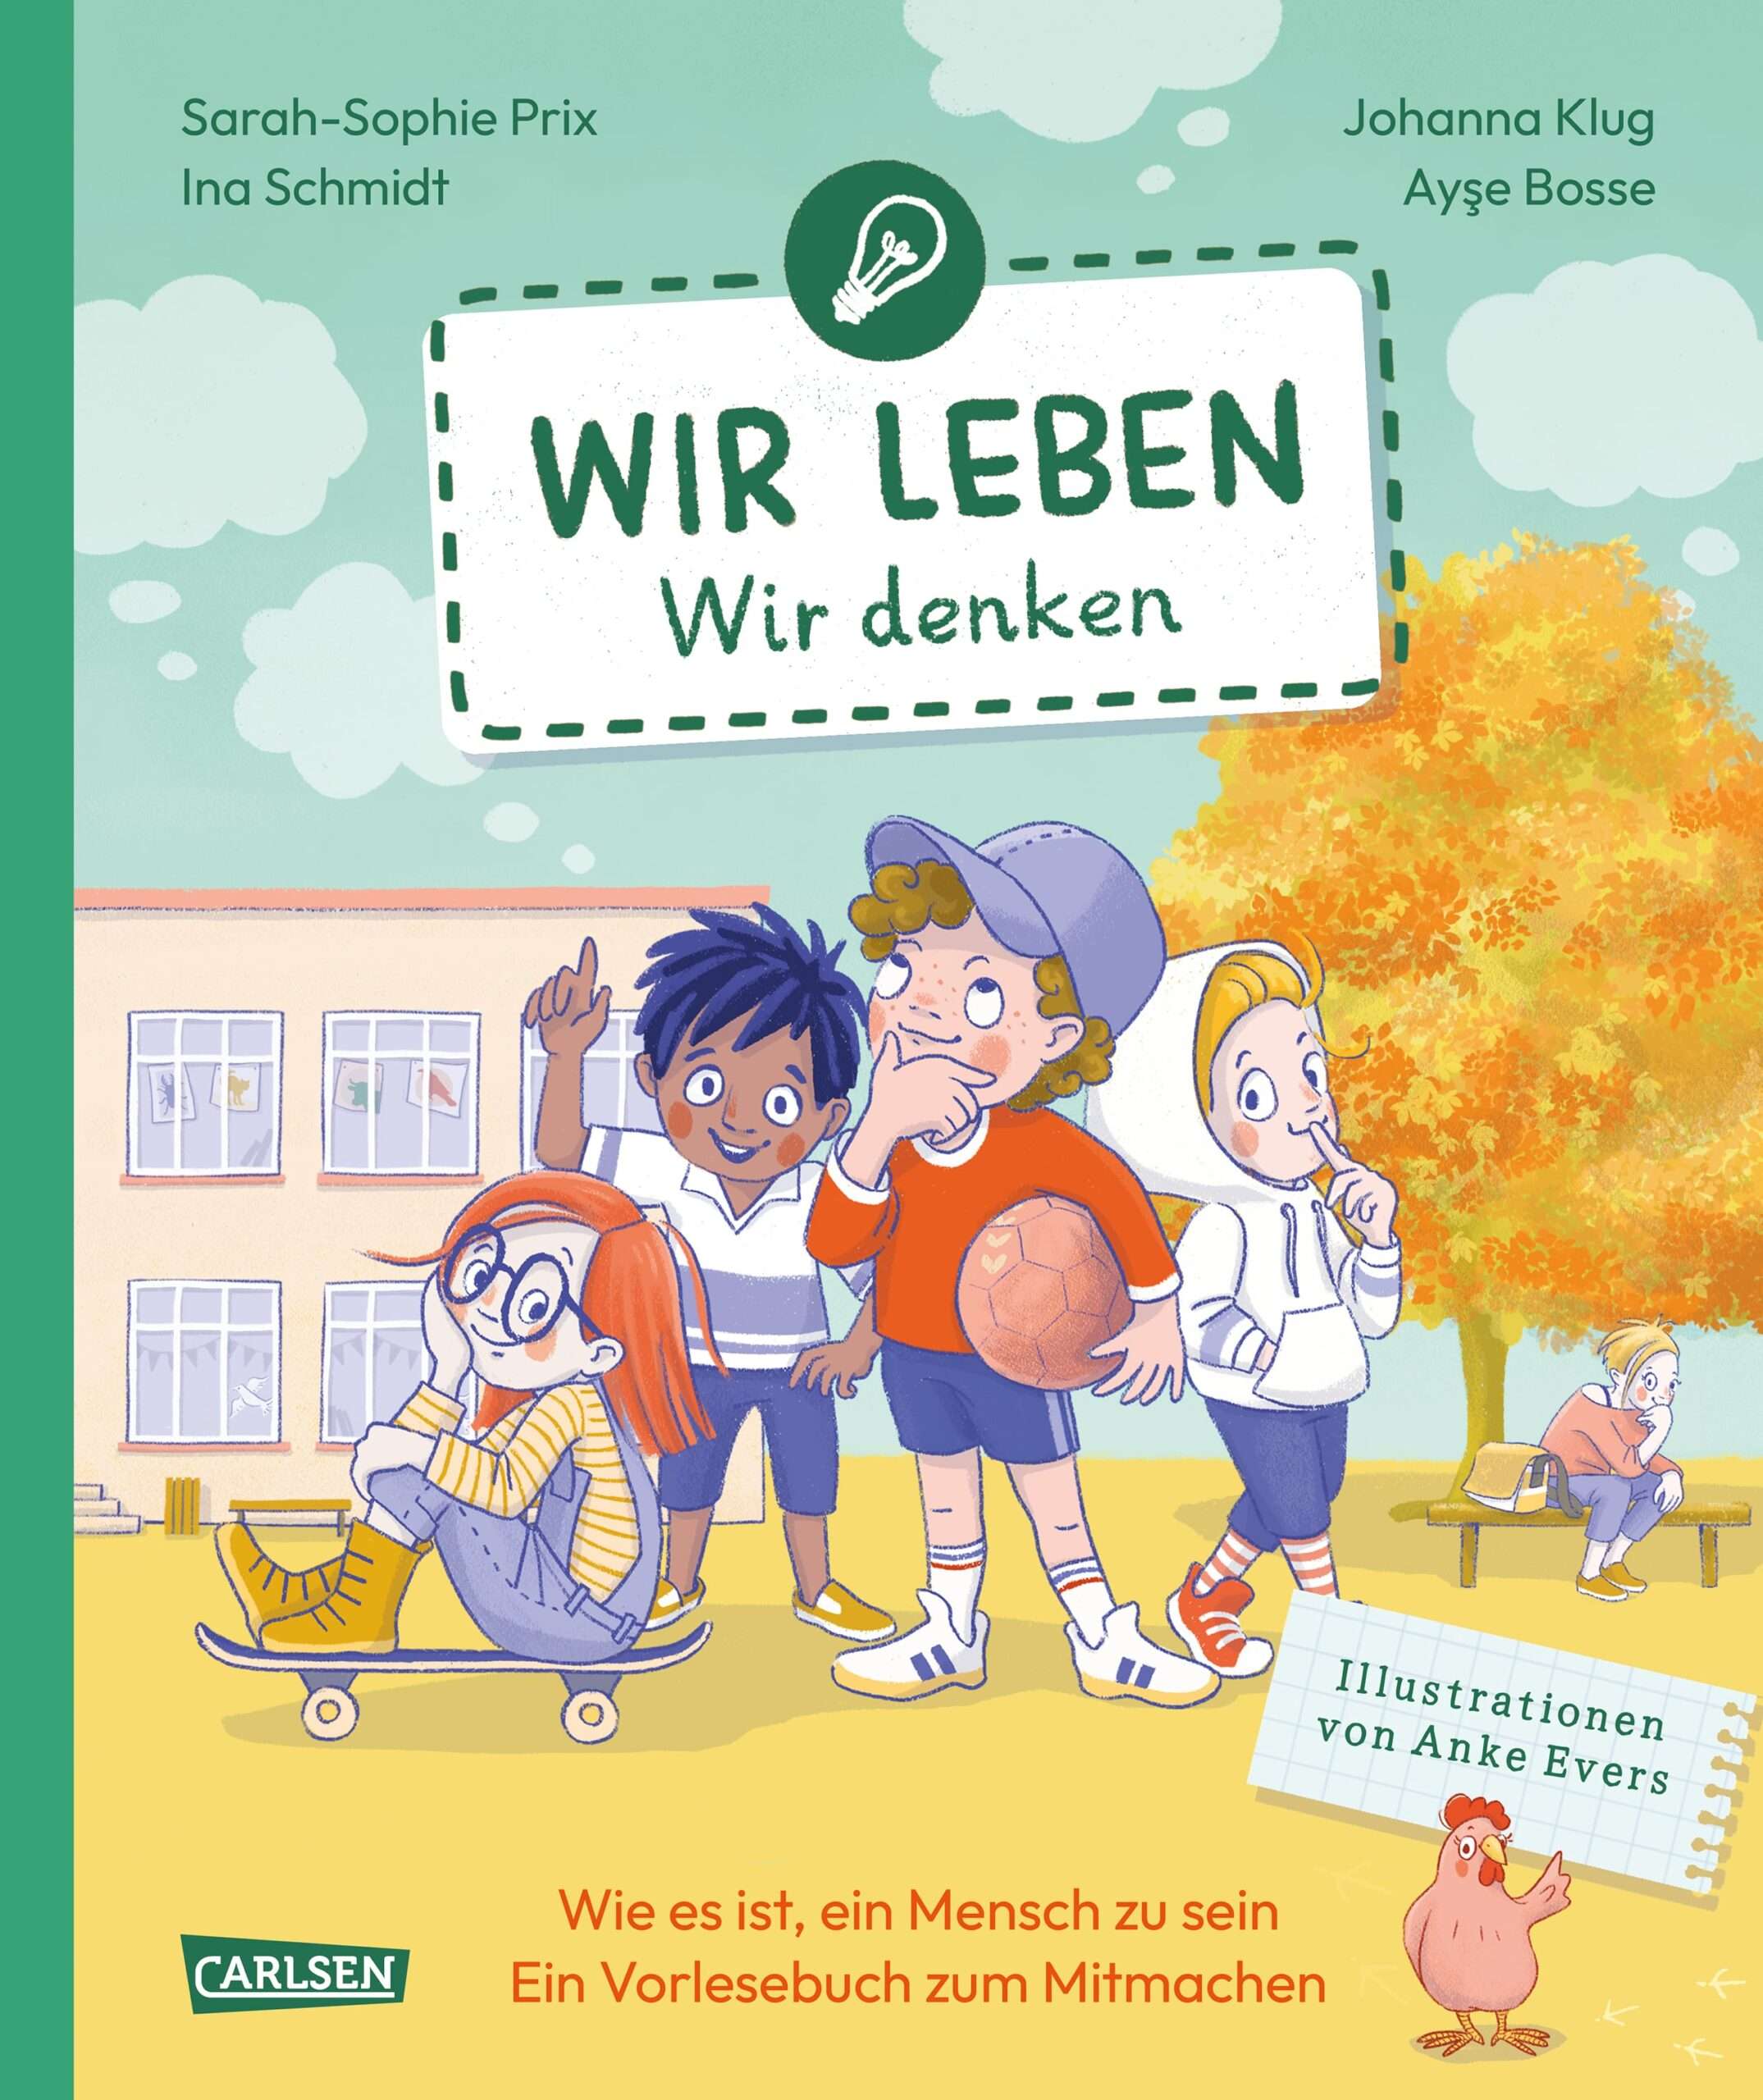 Buchreihe "Wir leben": Band 2: Wir denken (Cover)